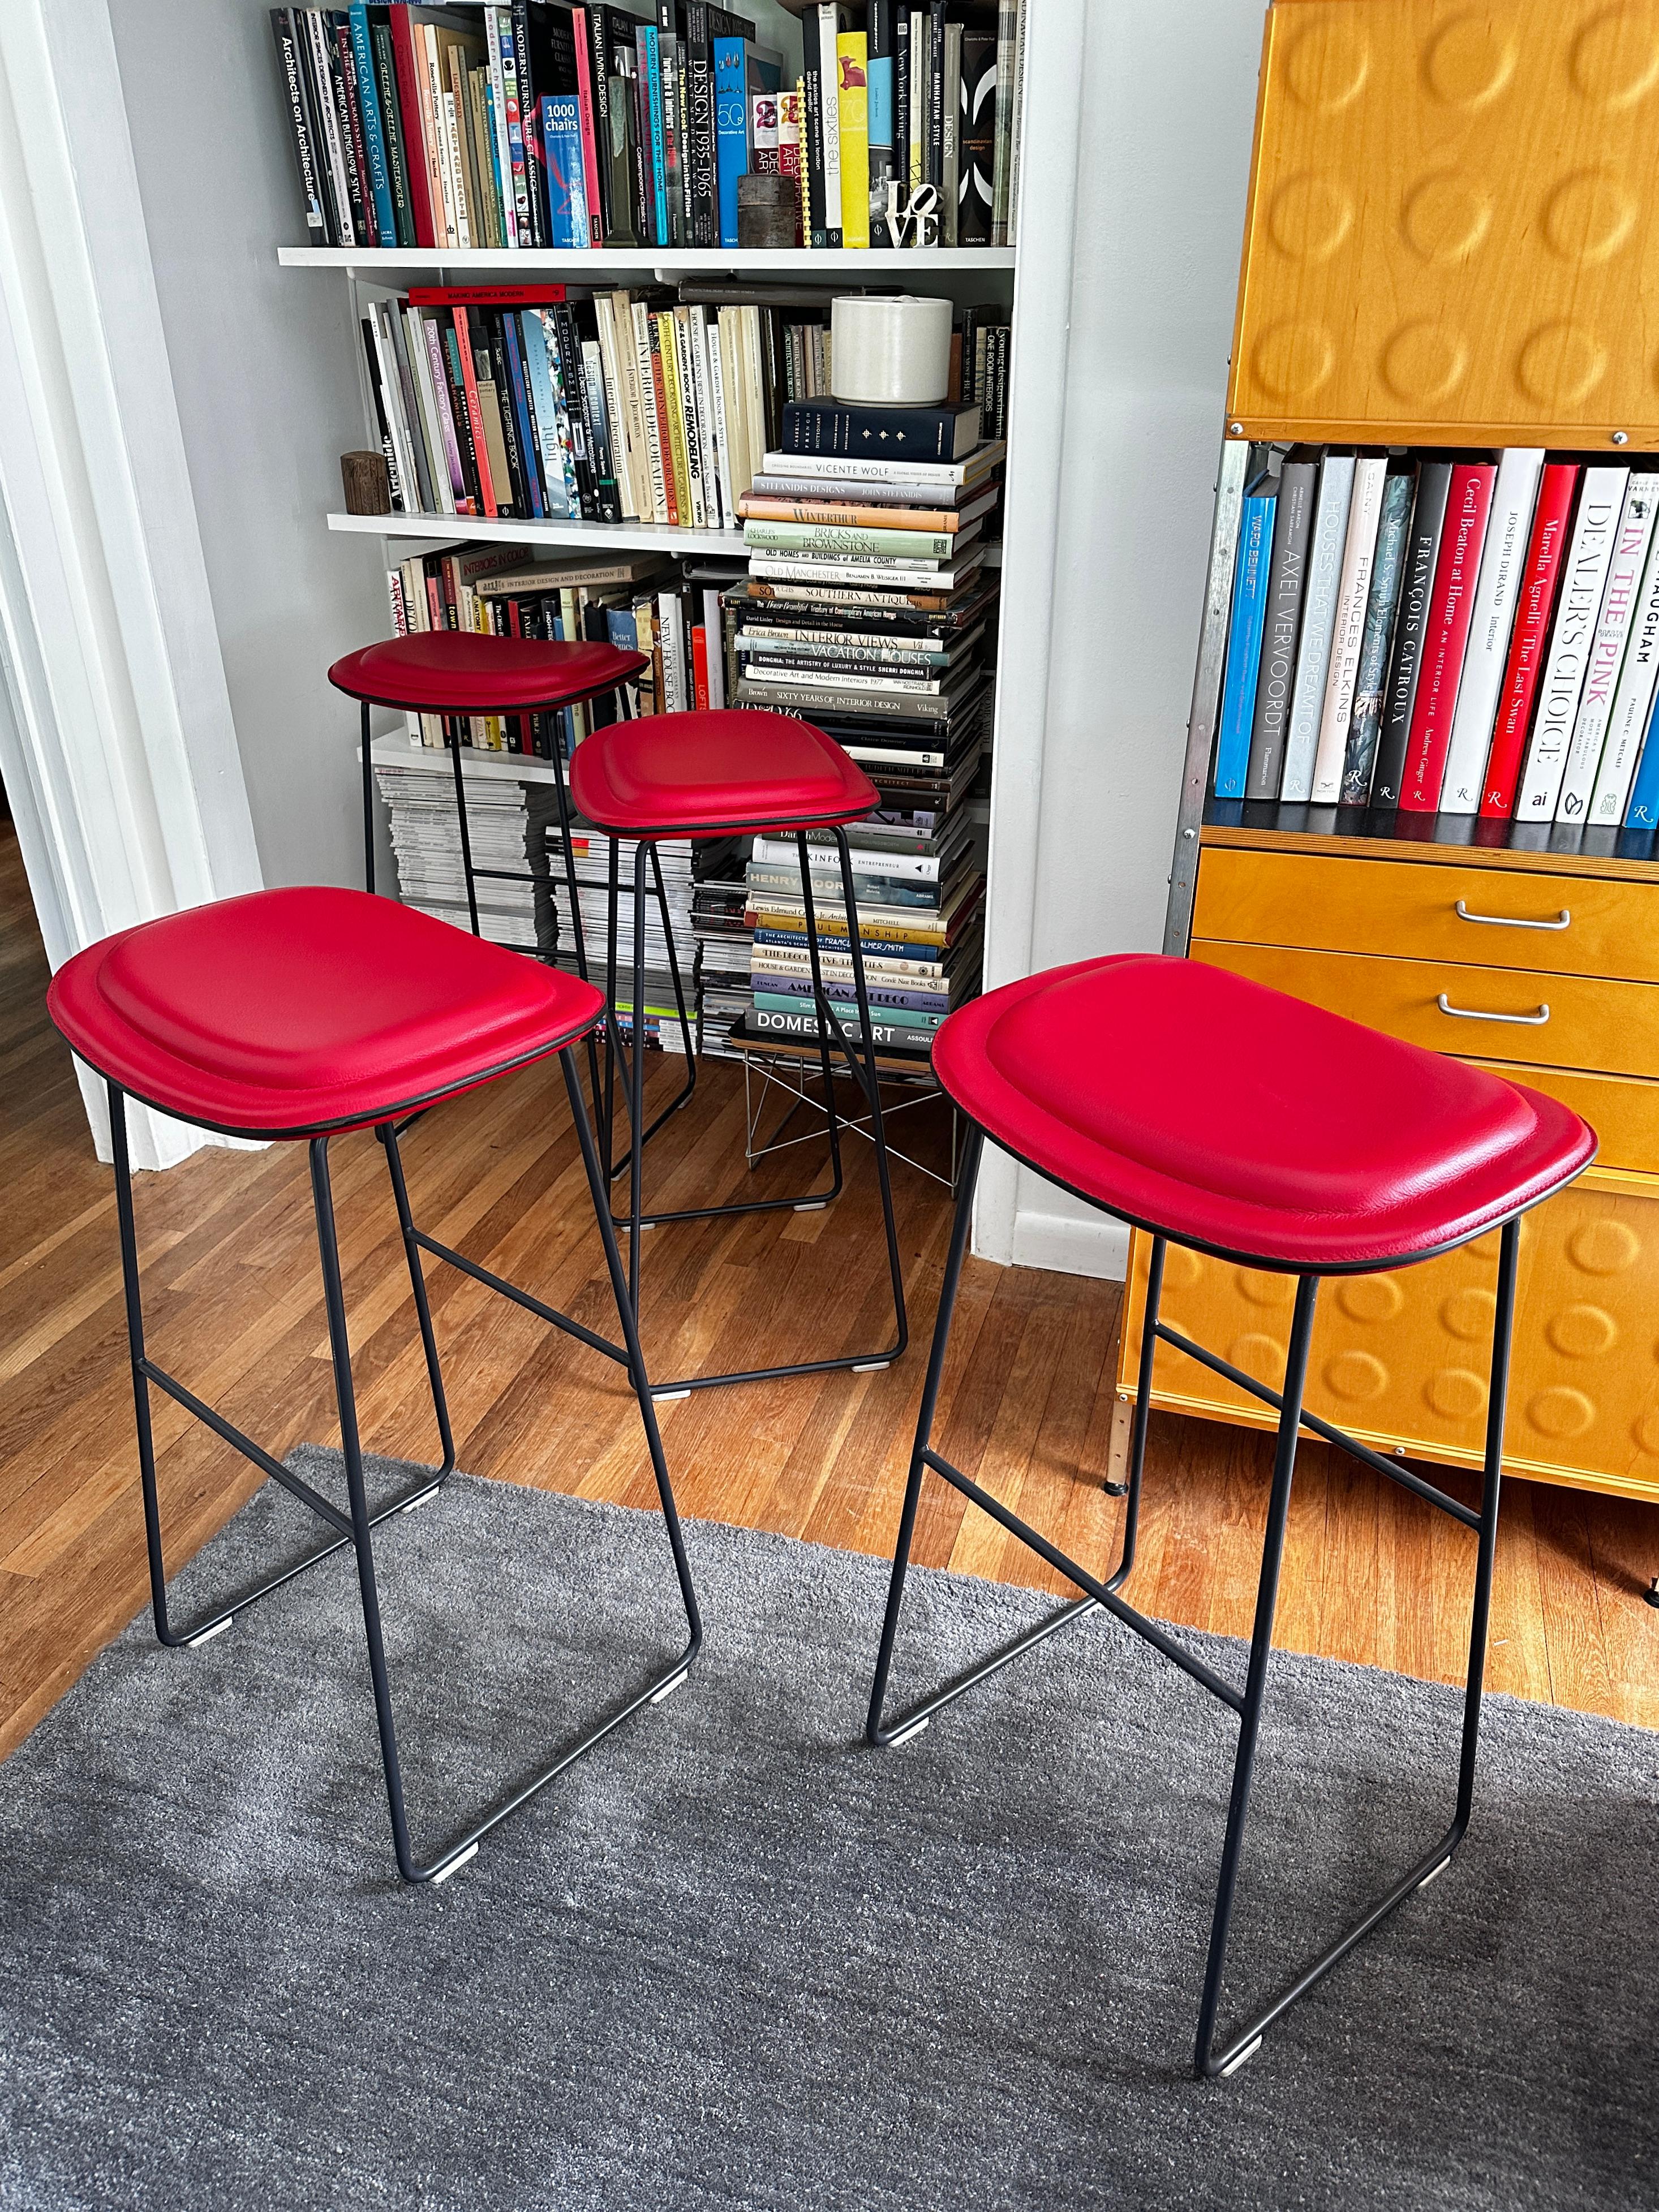 Quatre tabourets Hi Pad conçus par Jasper Morrison en 2003 pour Cappellini.  Les sièges sont recouverts de cuir rouge avec un piètement en acier inoxydable peint en gris métal armé qui repose sur quatre patins en polypropylène.  Parmi les trois